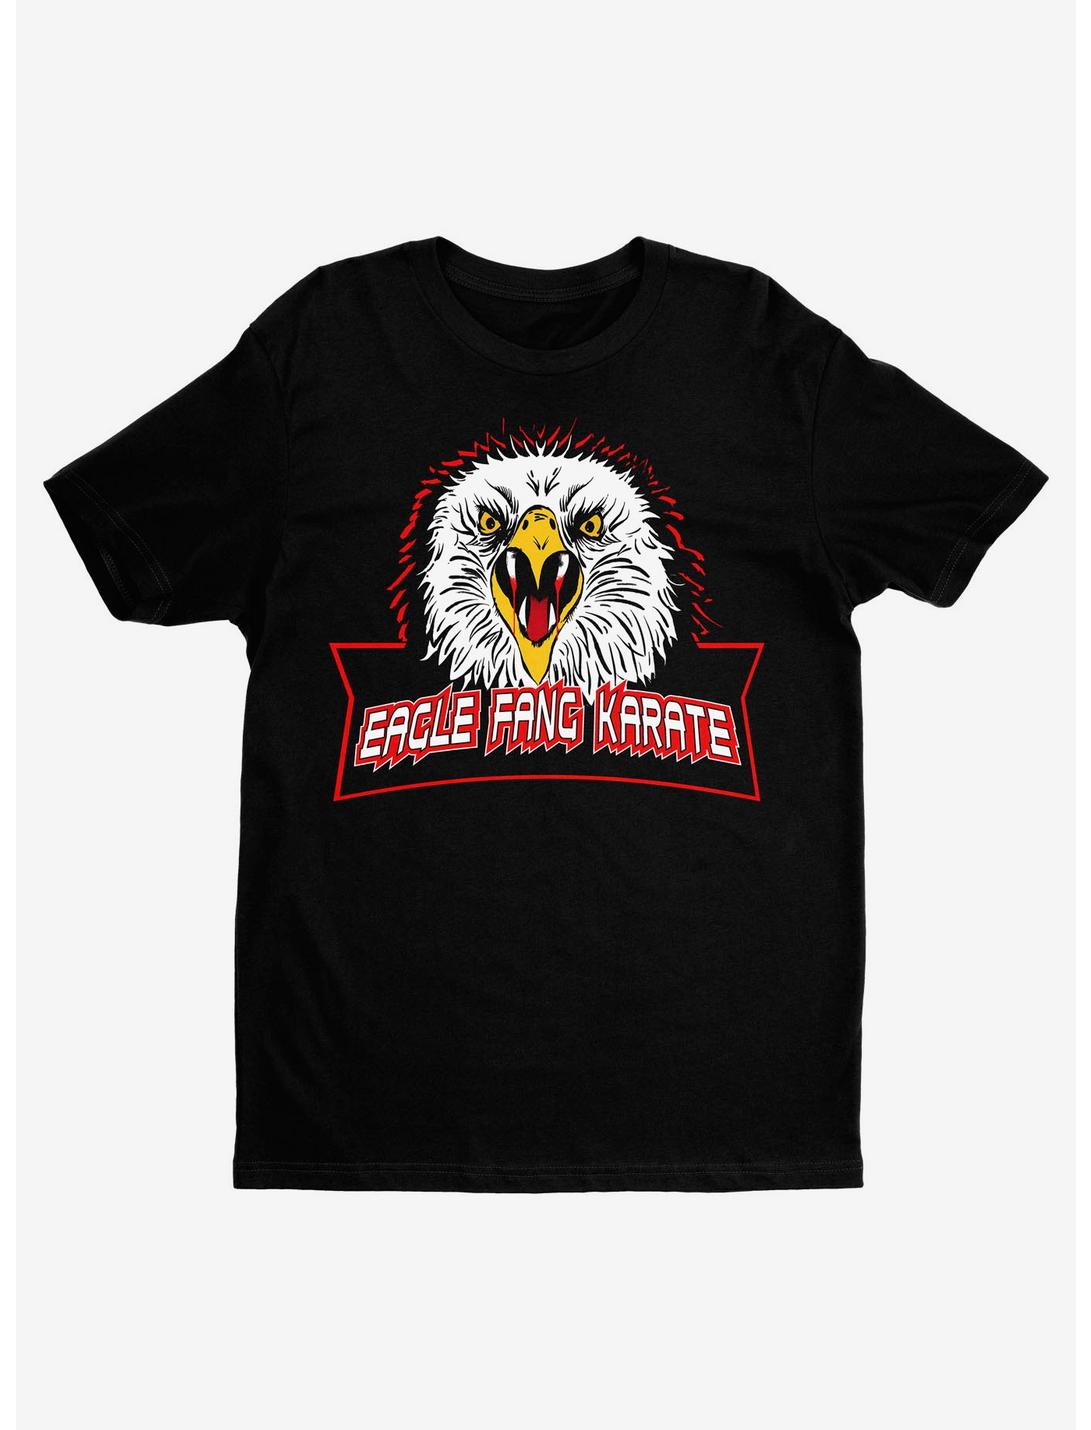 Cobra Kai Eagle Fang Karate Black T-Shirt Hot Topic Exclusive, BLACK, hi-res